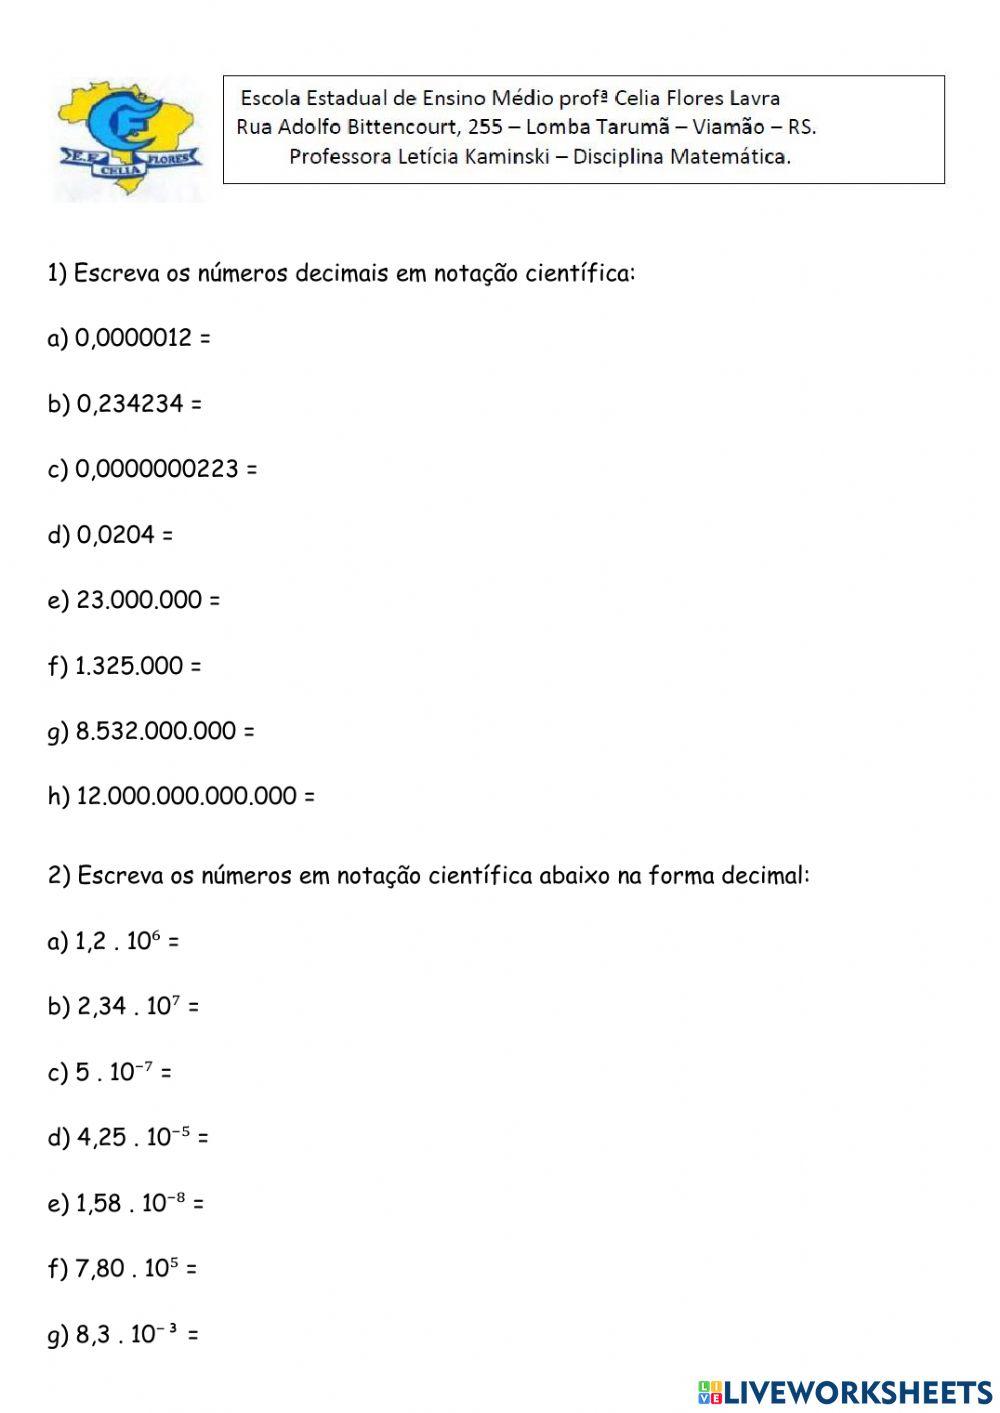 Como transformar um número em notação científica